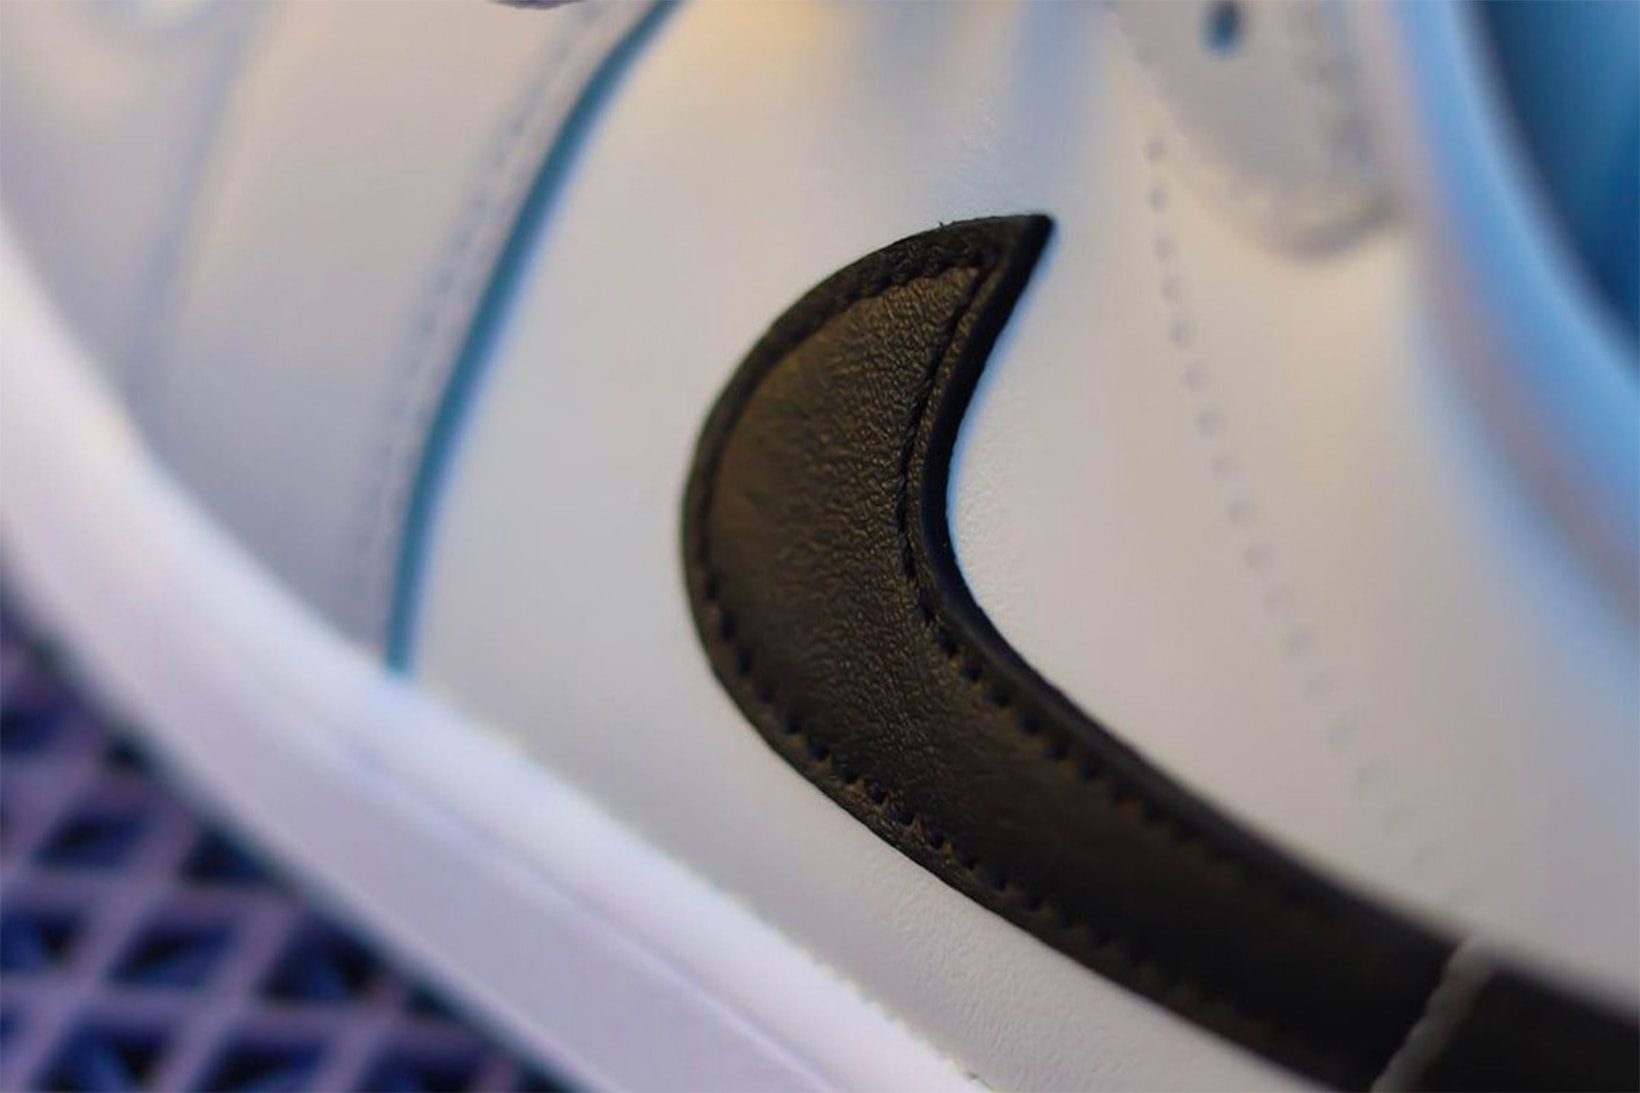 Nike Air Jordan 1 Low Golf Sneakers "Wolf Grey" Michael Jordan Leather Swoosh